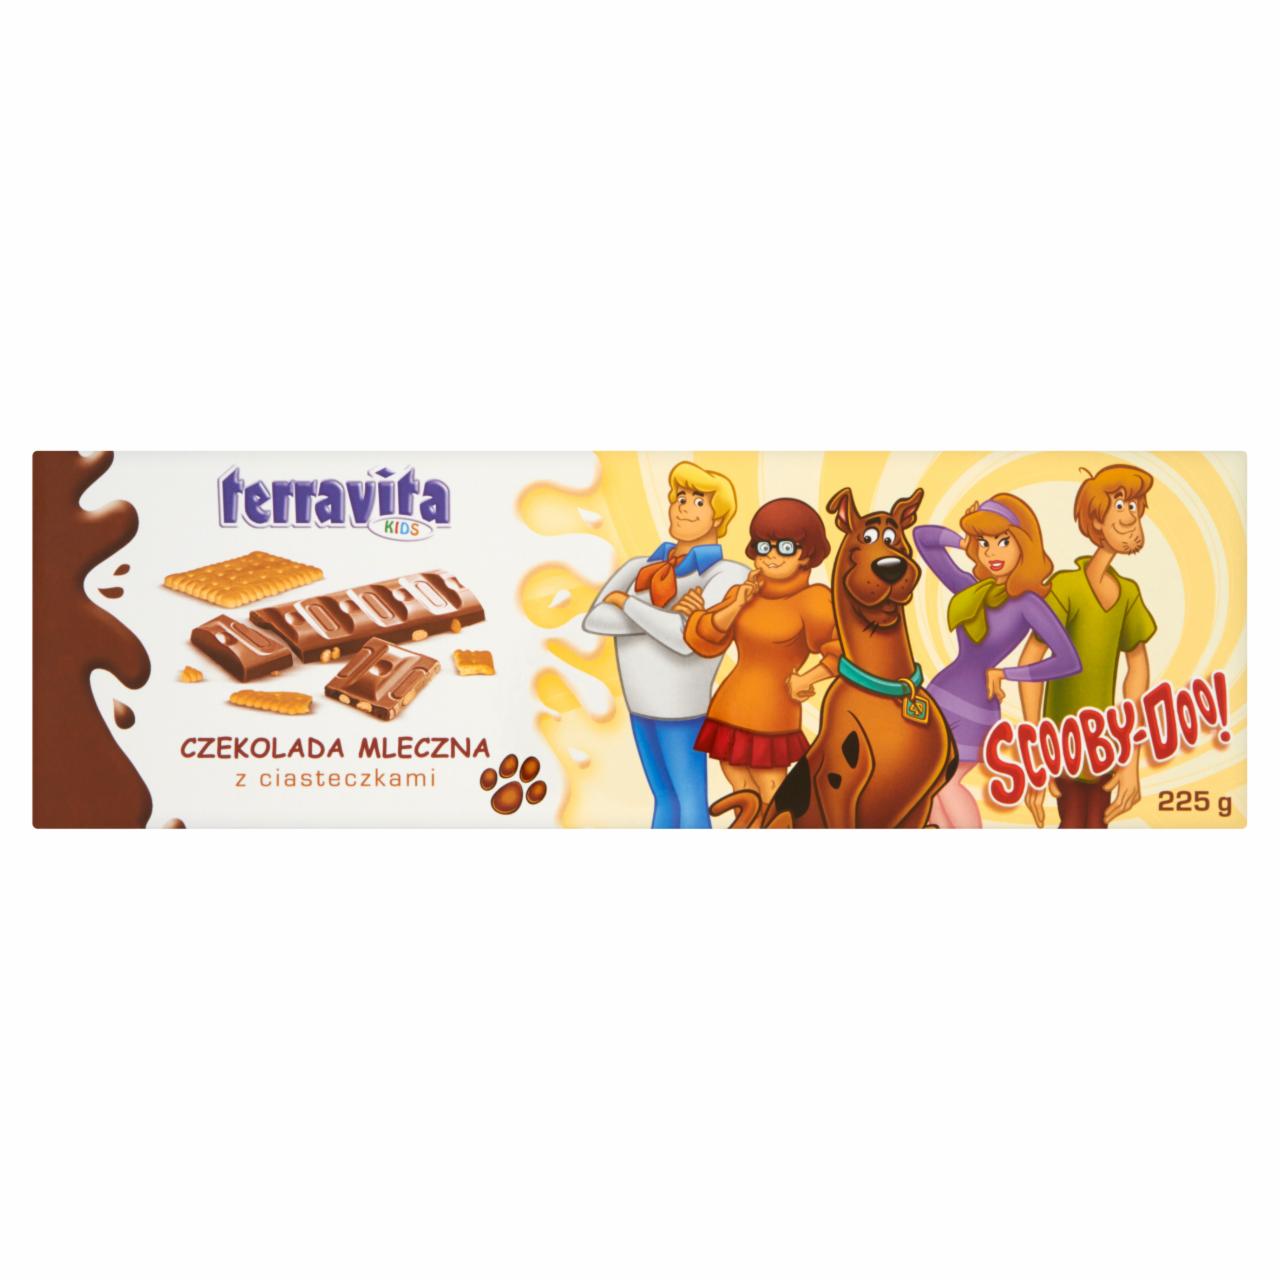 Zdjęcia - Terravita Kids Scooby-Doo Czekolada mleczna z ciasteczkami 225 g